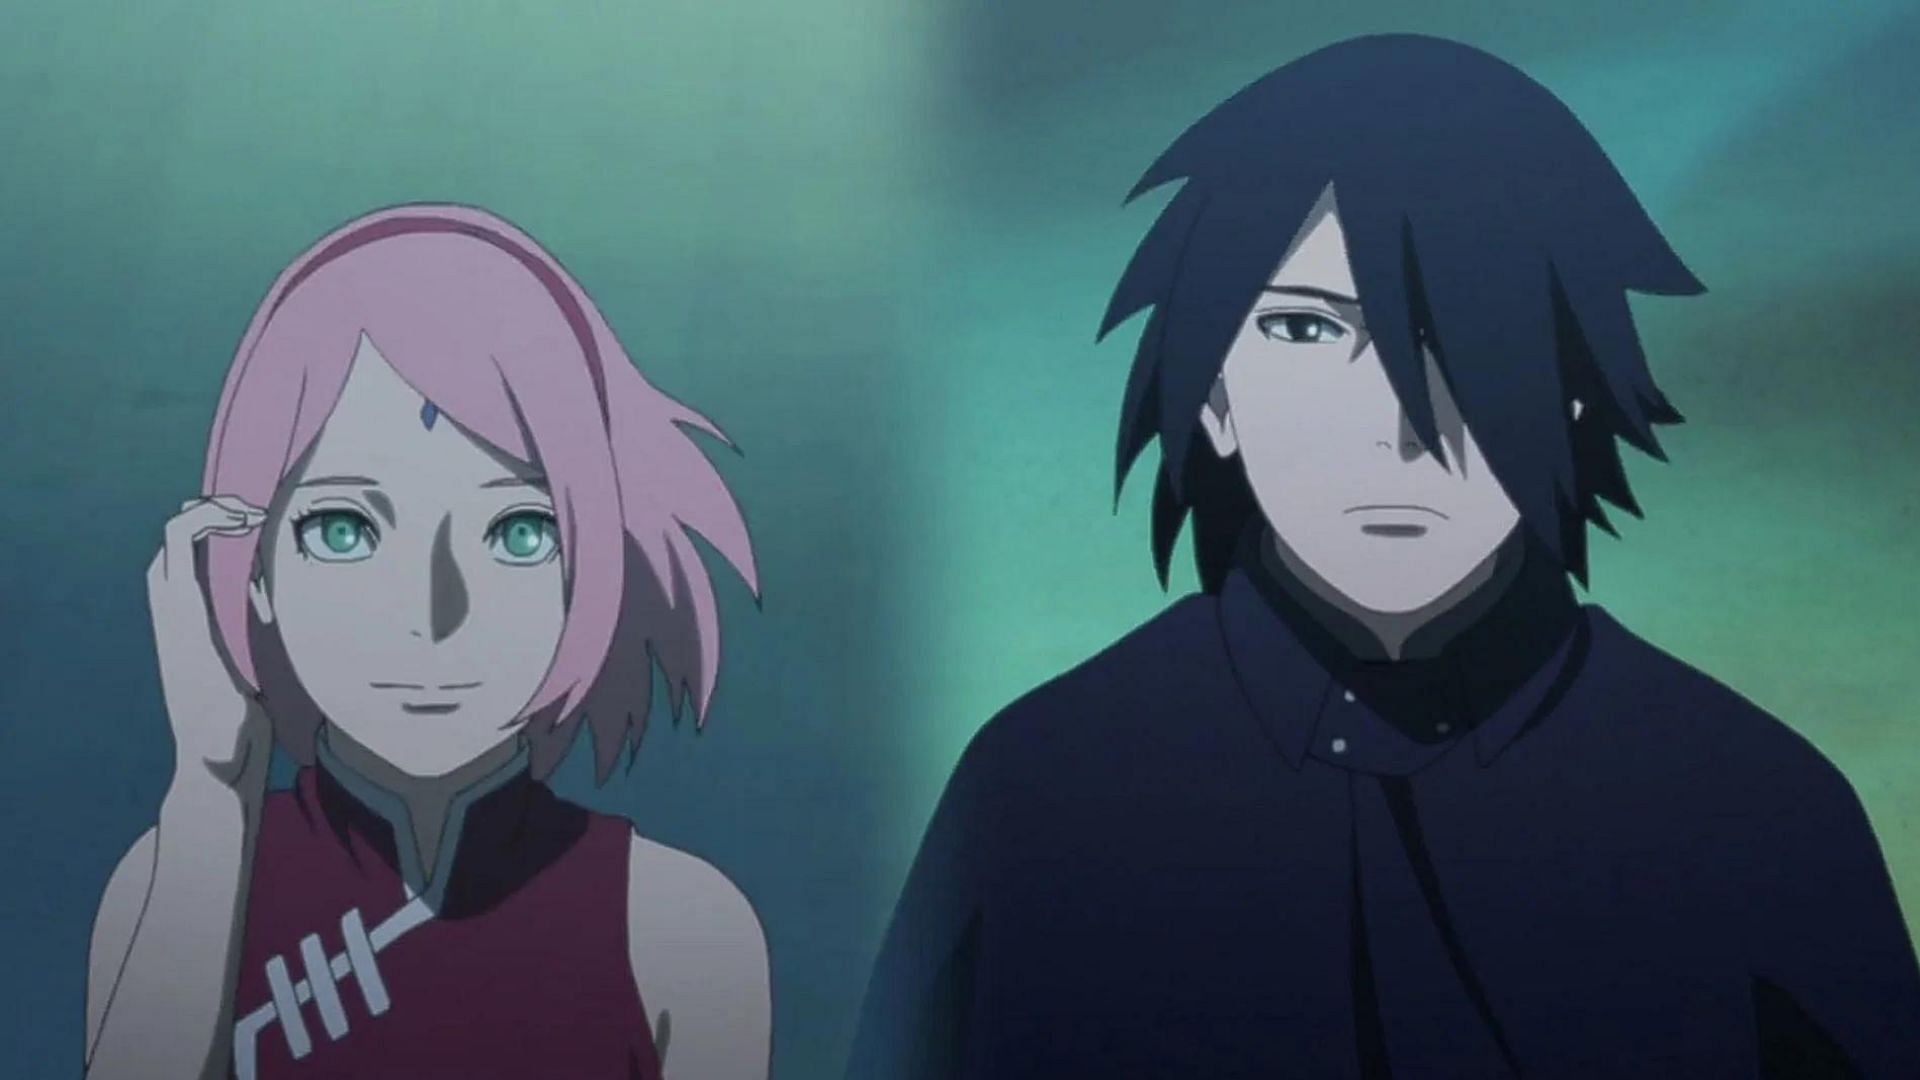 Sakura and Sasuke as seen in the anime